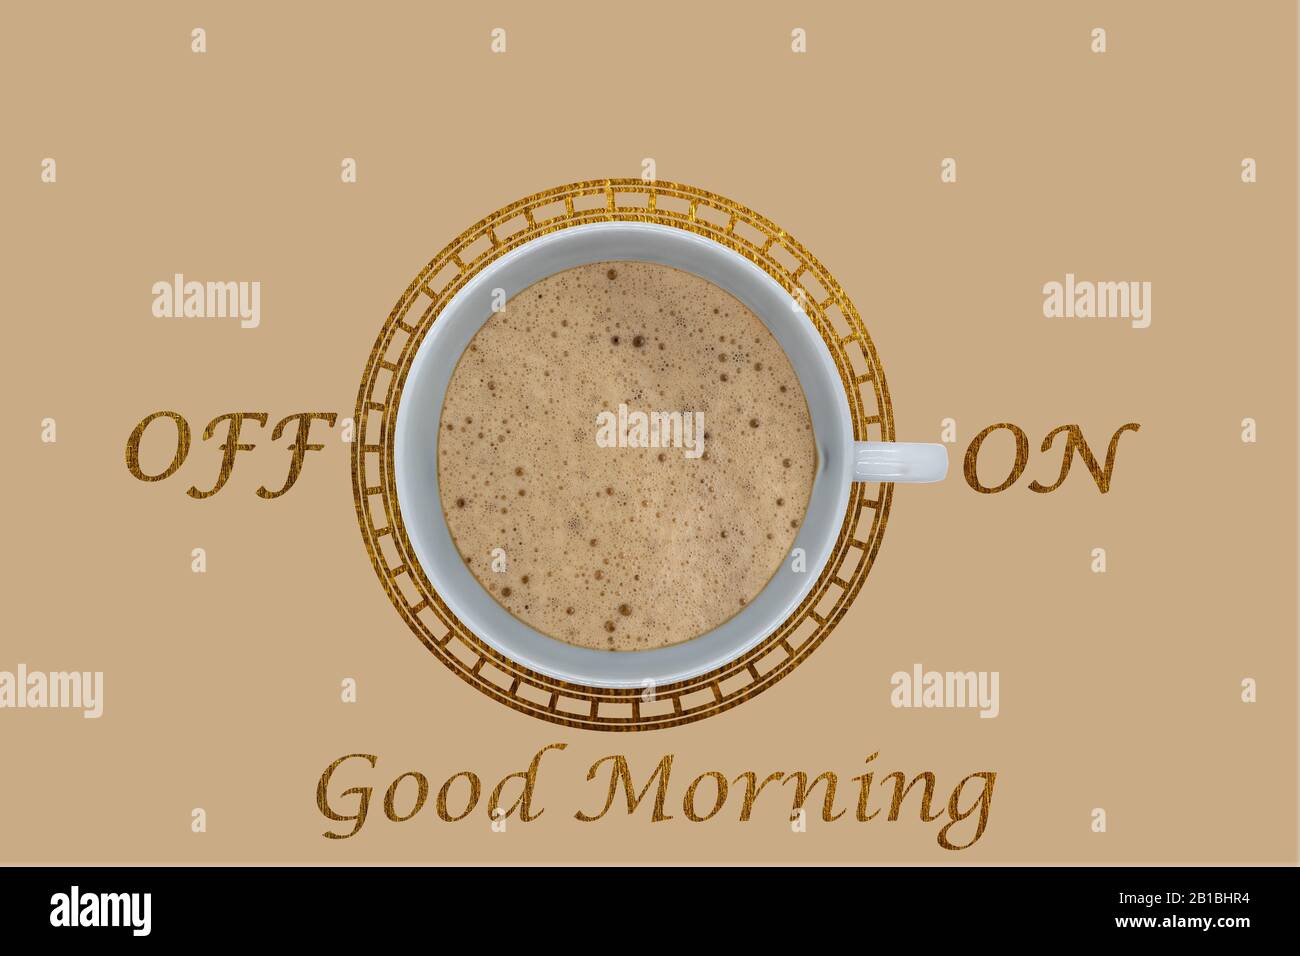 Vista Cenital di una tazza di caffè bianco con il testo ON - OFF e Buona Mattina, come motivazione concettuale Foto Stock